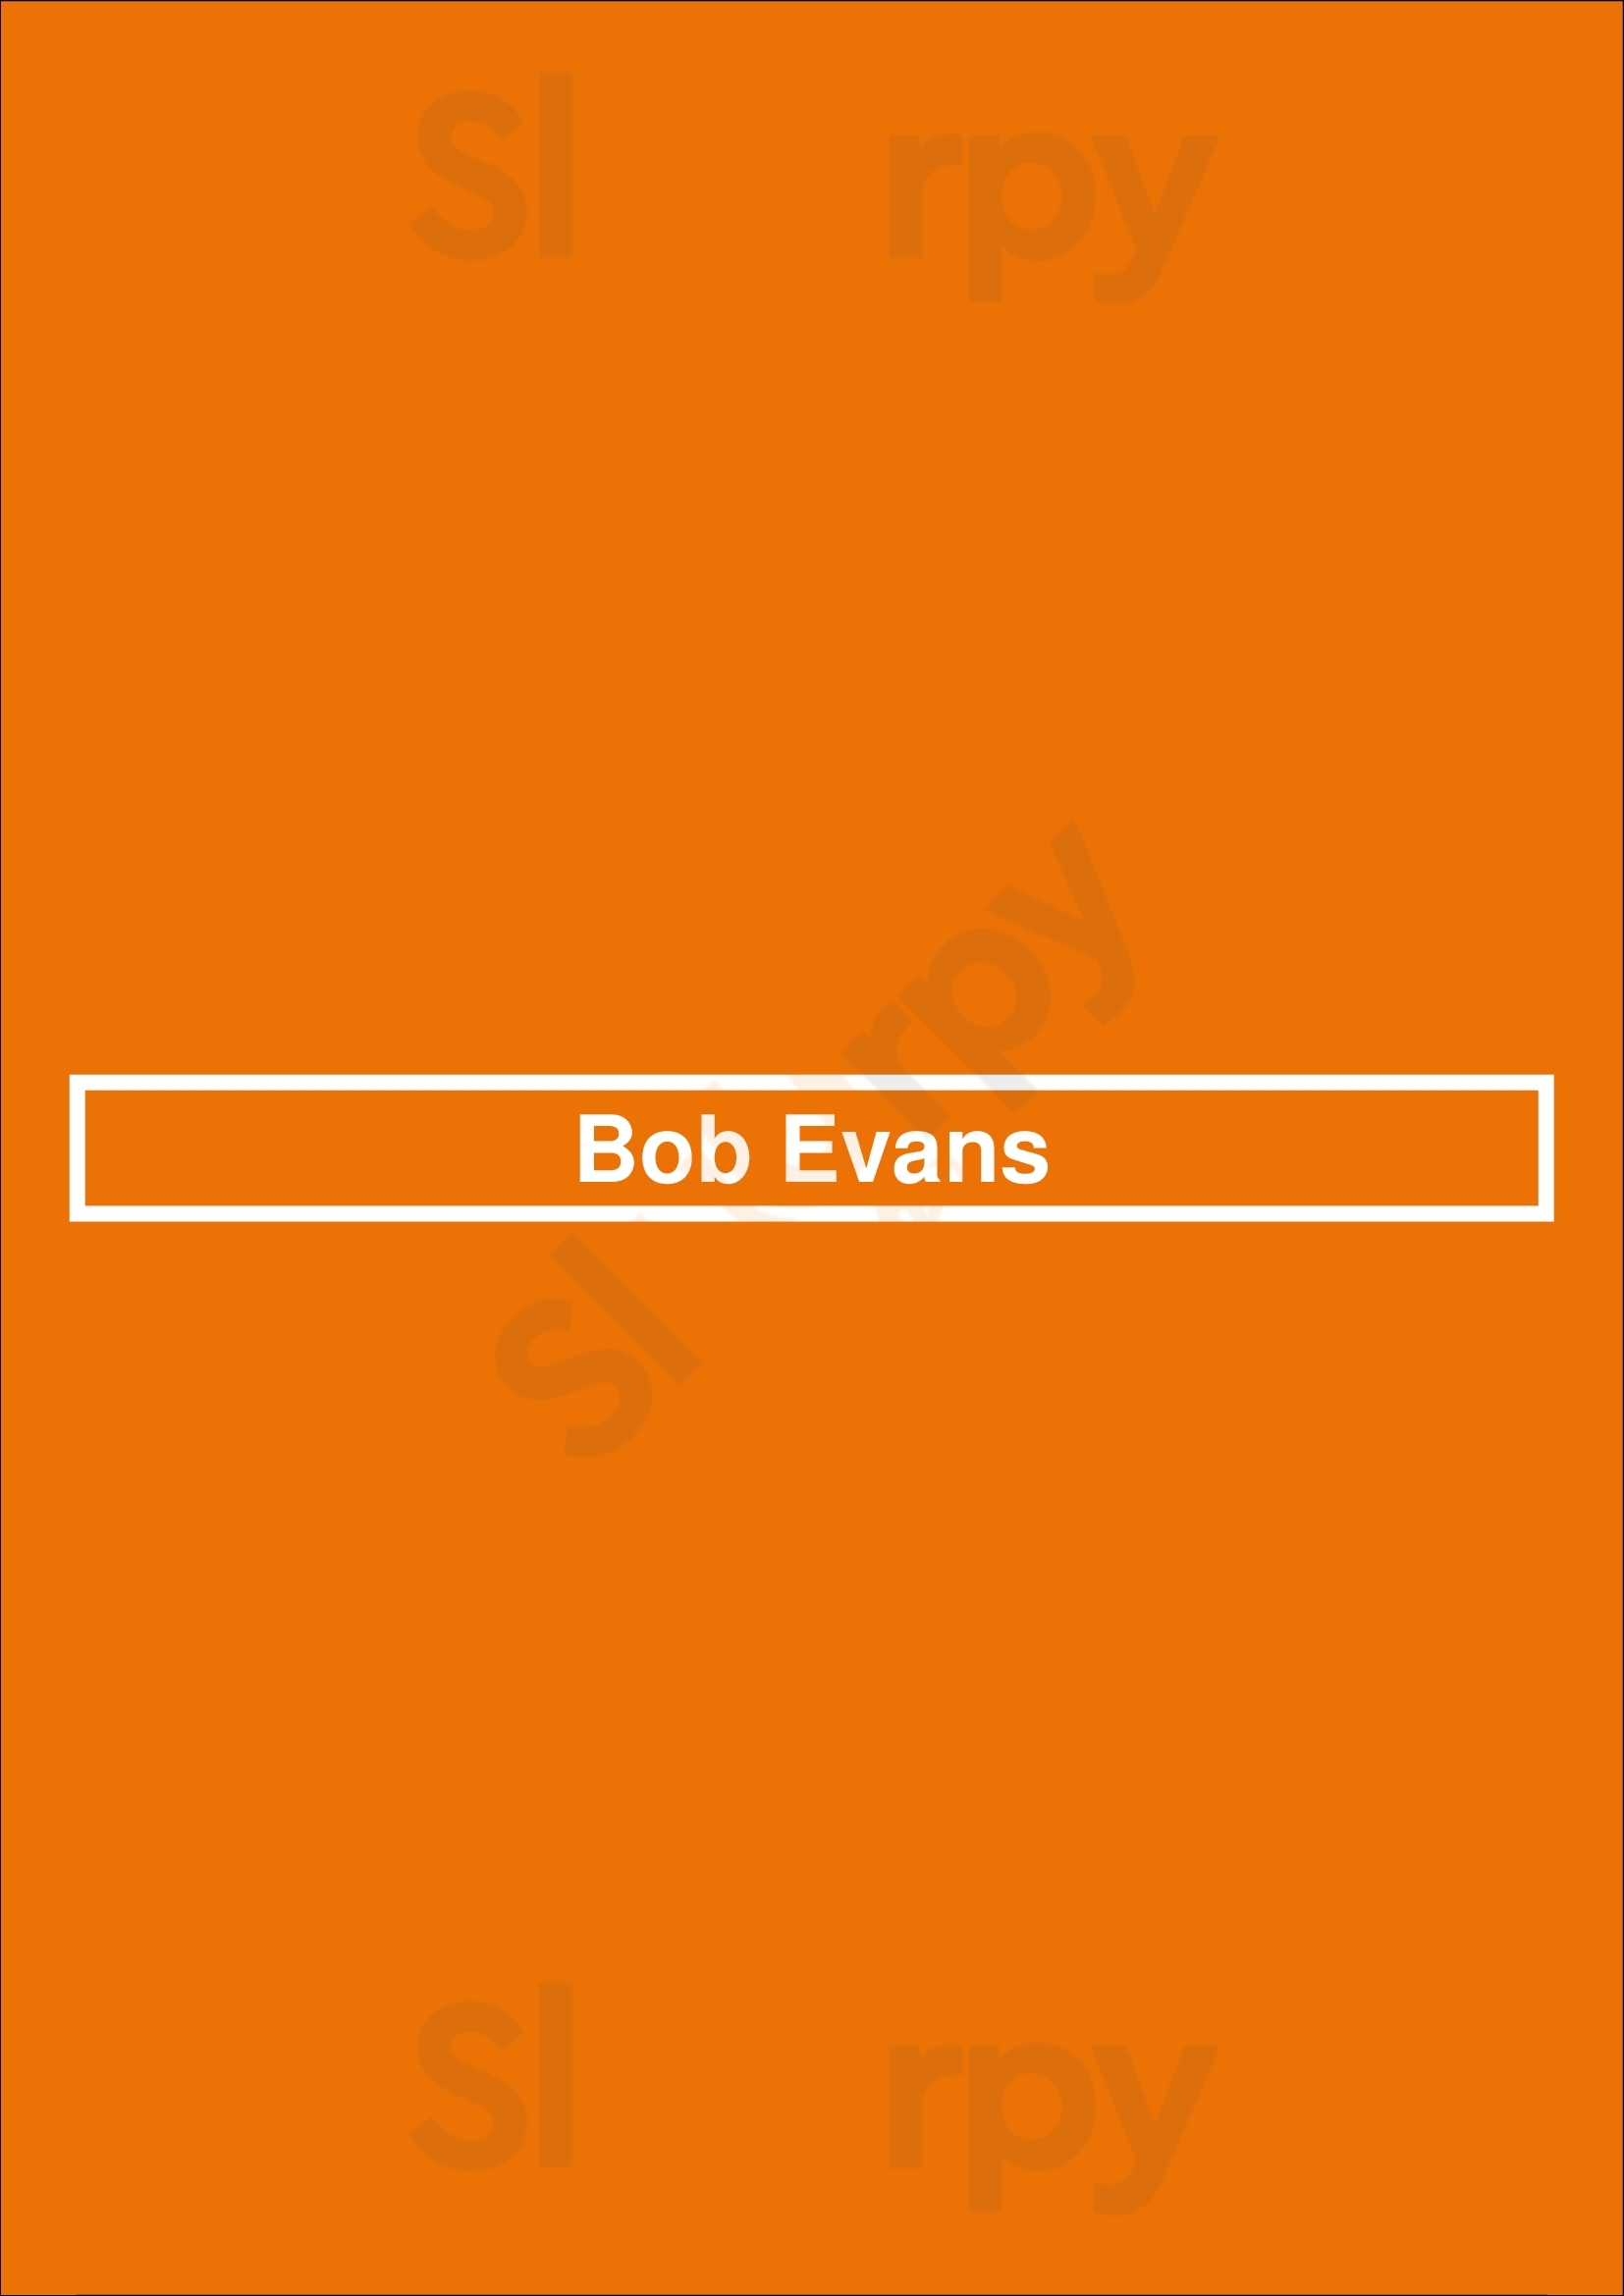 Bob Evans Canton Menu - 1